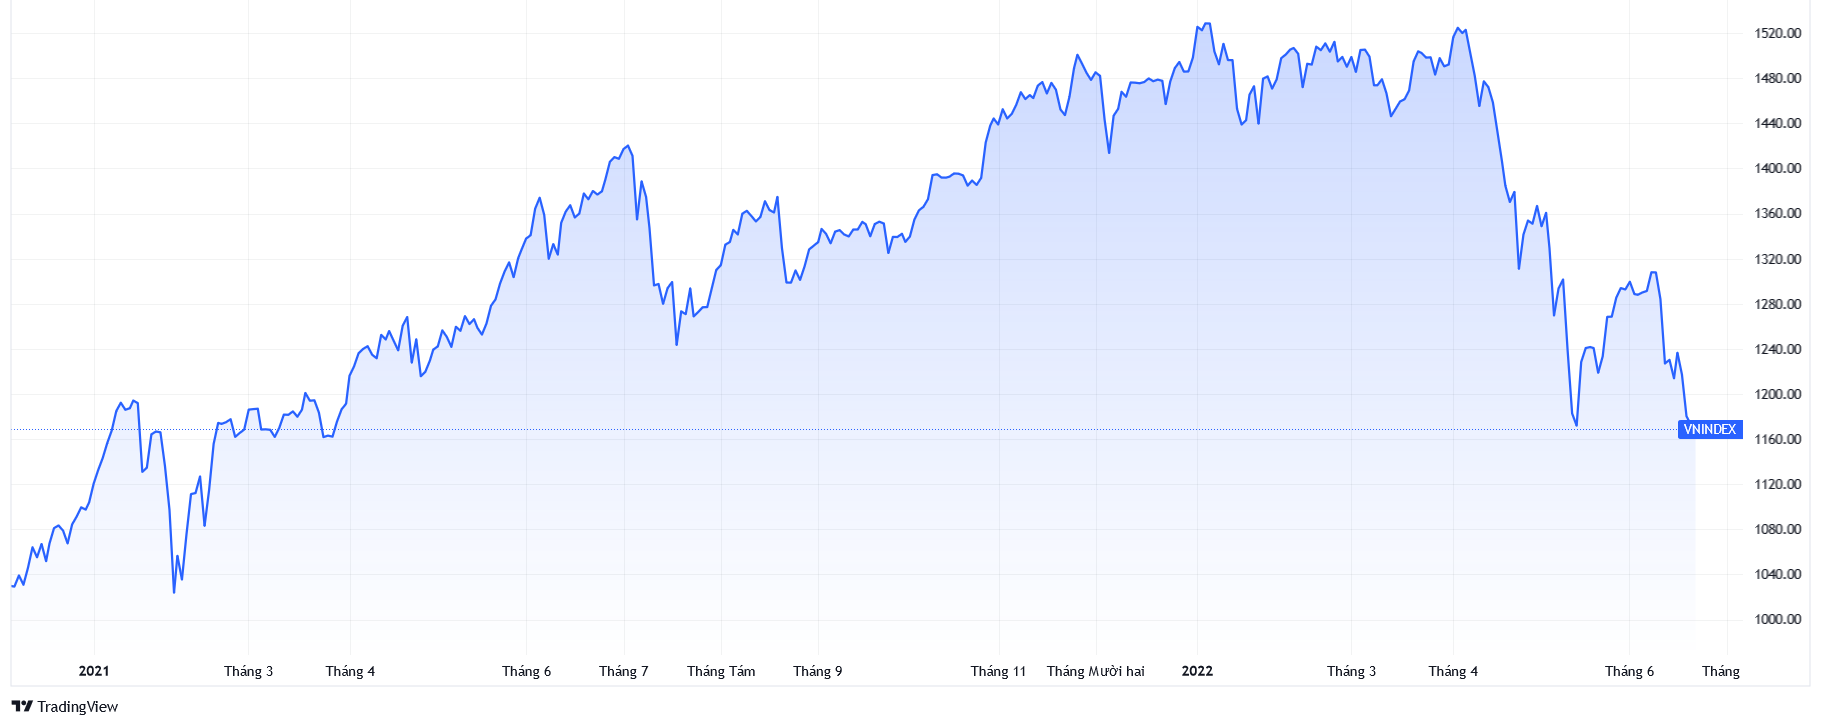 VN-Index giảm xuống mức thấp nhất kể từ tháng 3/2021. Nguồn: TradingView.